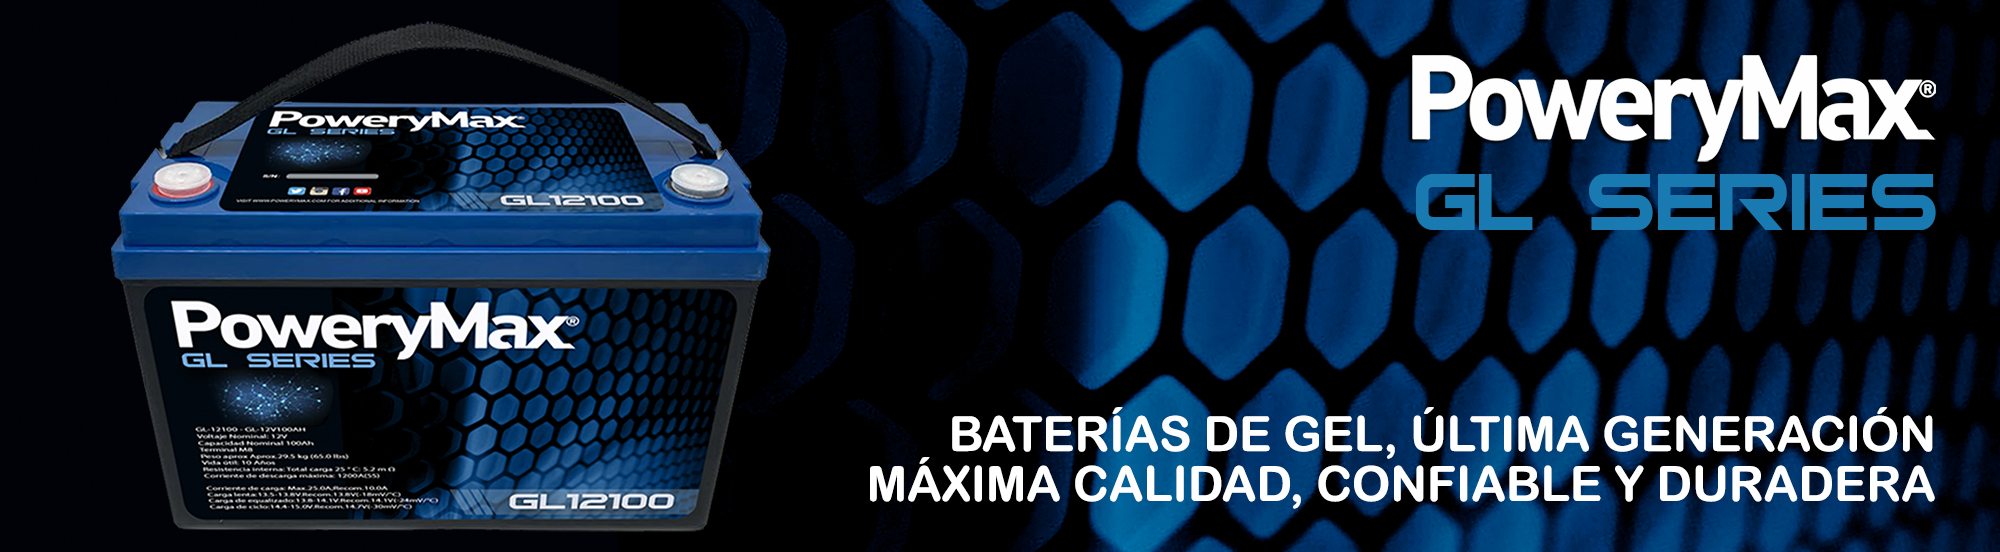 Batería de gel PoweryMax GL series. Baterías de Gel de última generación específica para alimentar motores eléctricos.